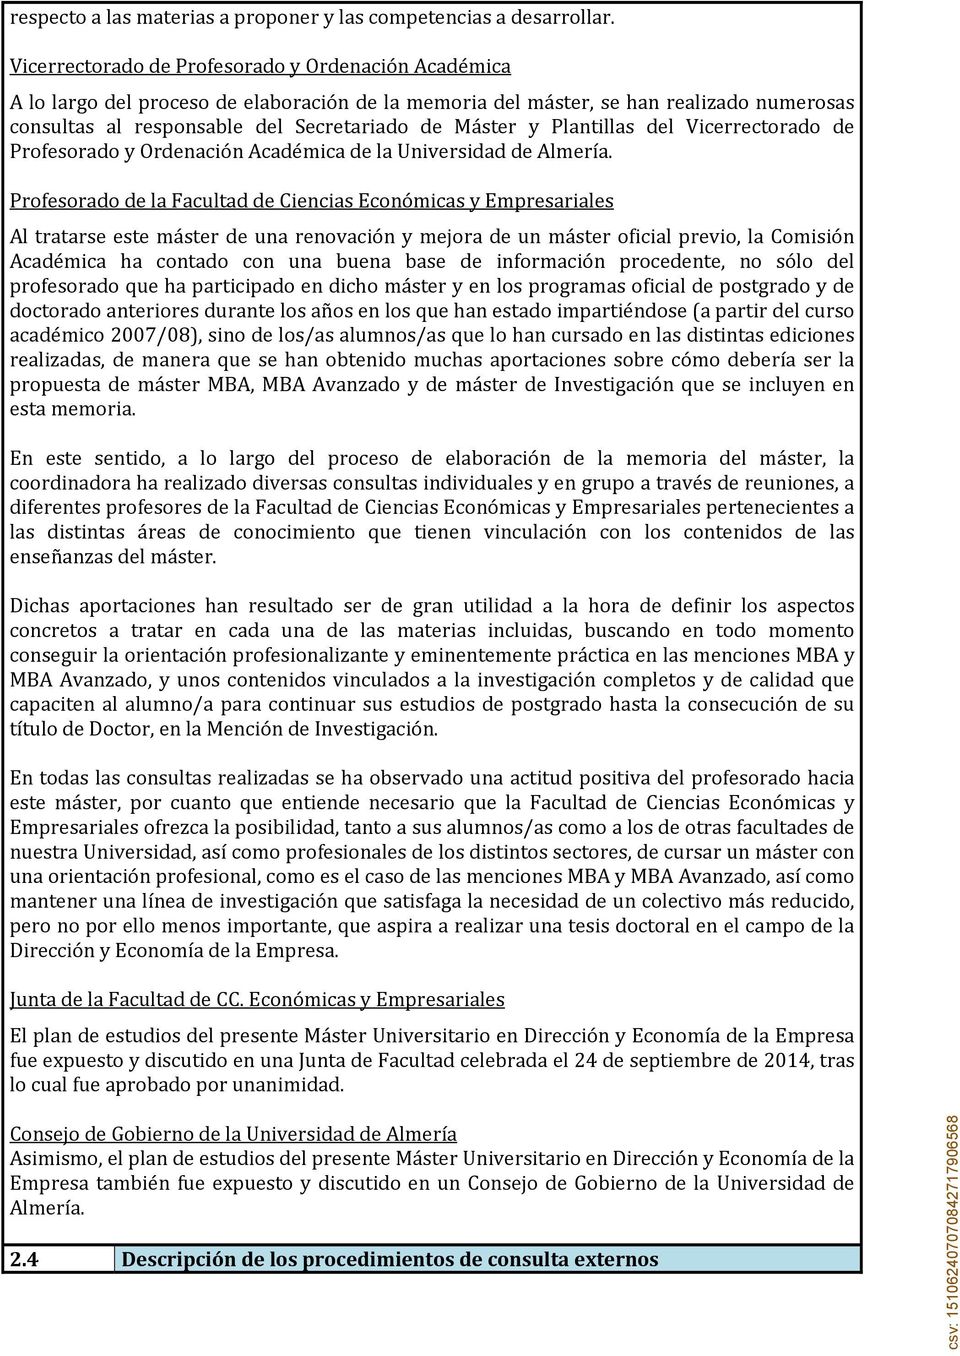 Plantillas del Vicerrectorado de Profesorado y Ordenación Académica de la Universidad de Almería.